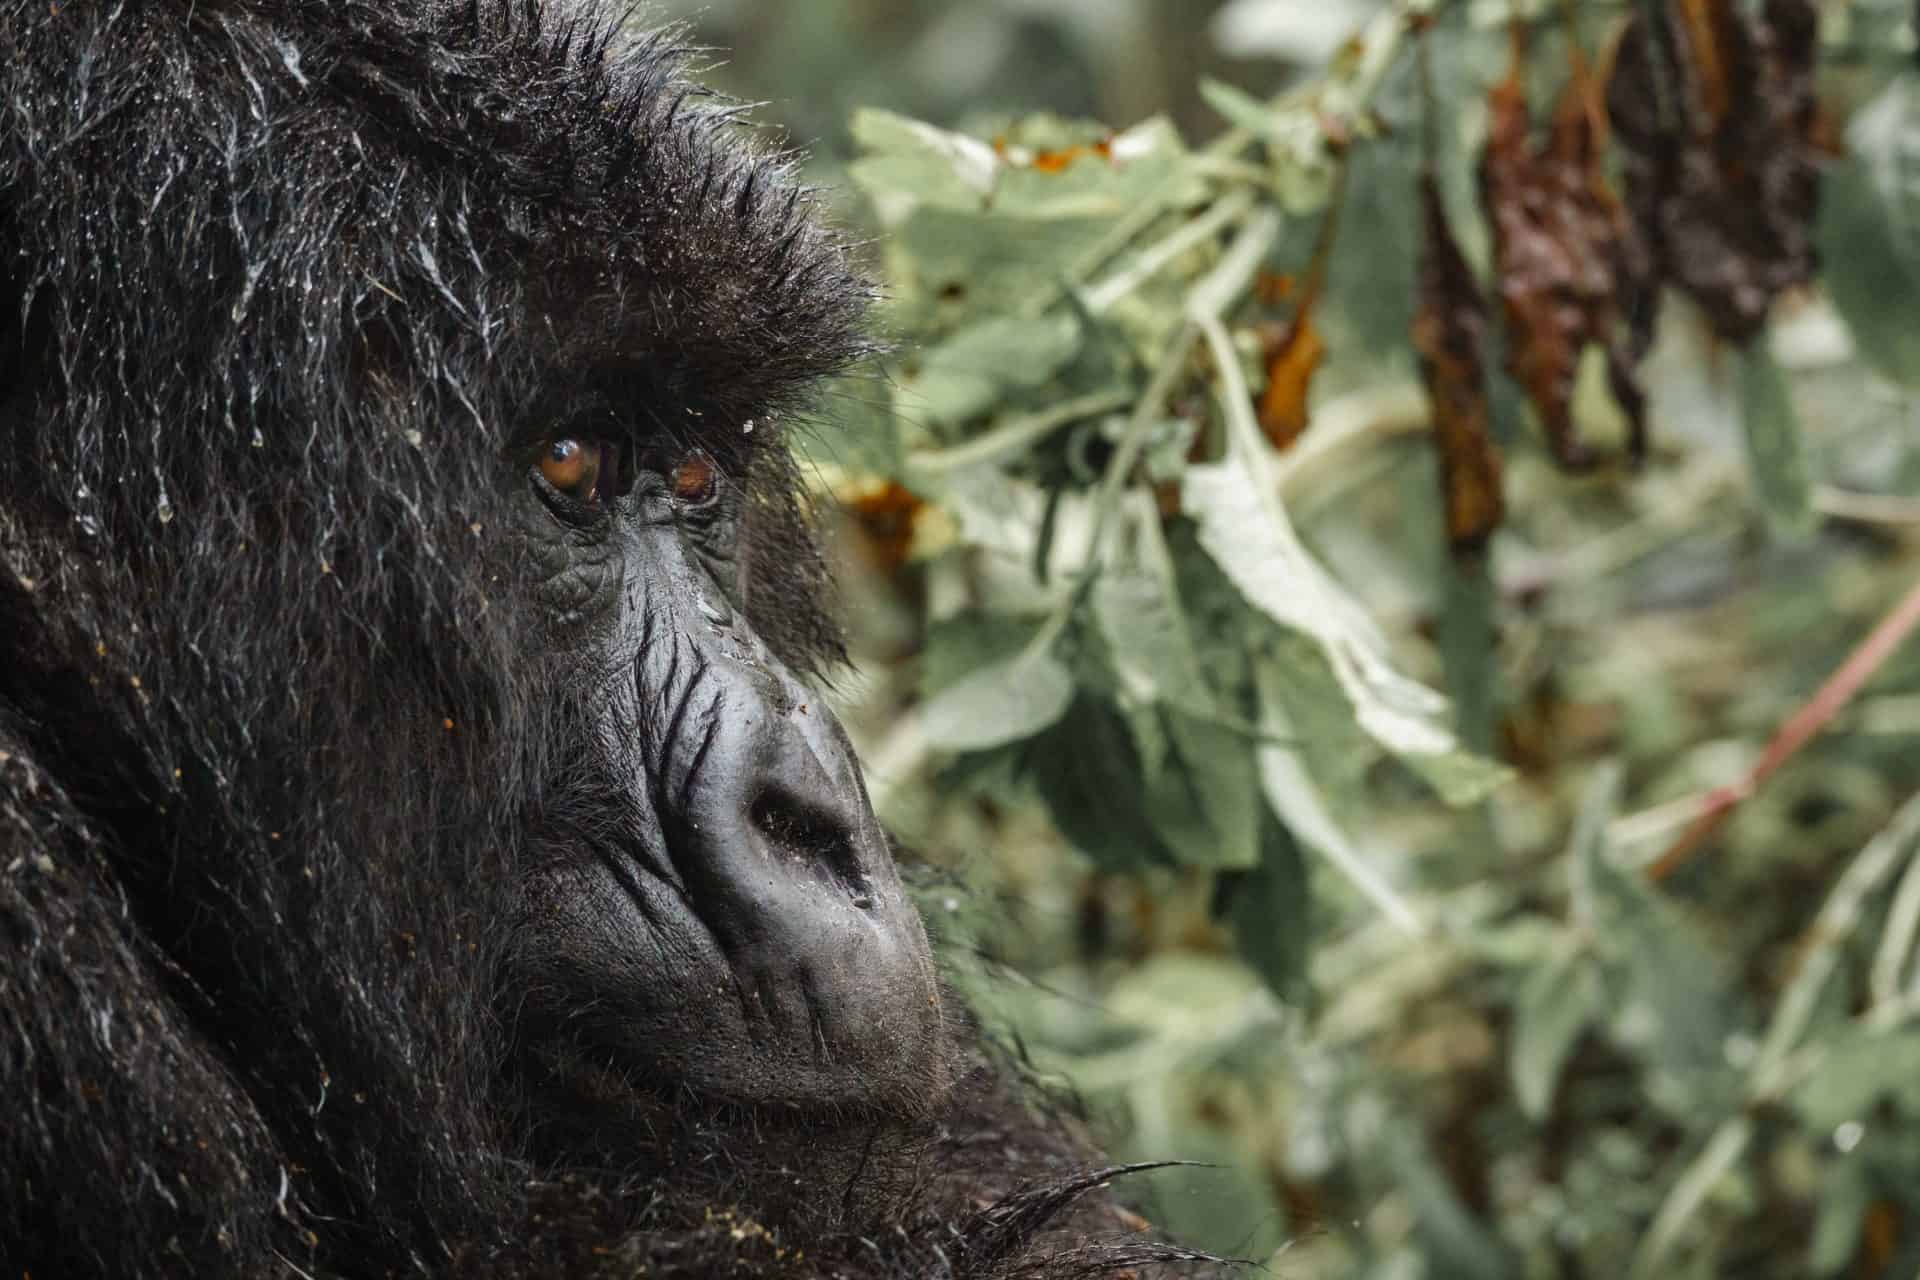 Closeup of mountain gorilla face